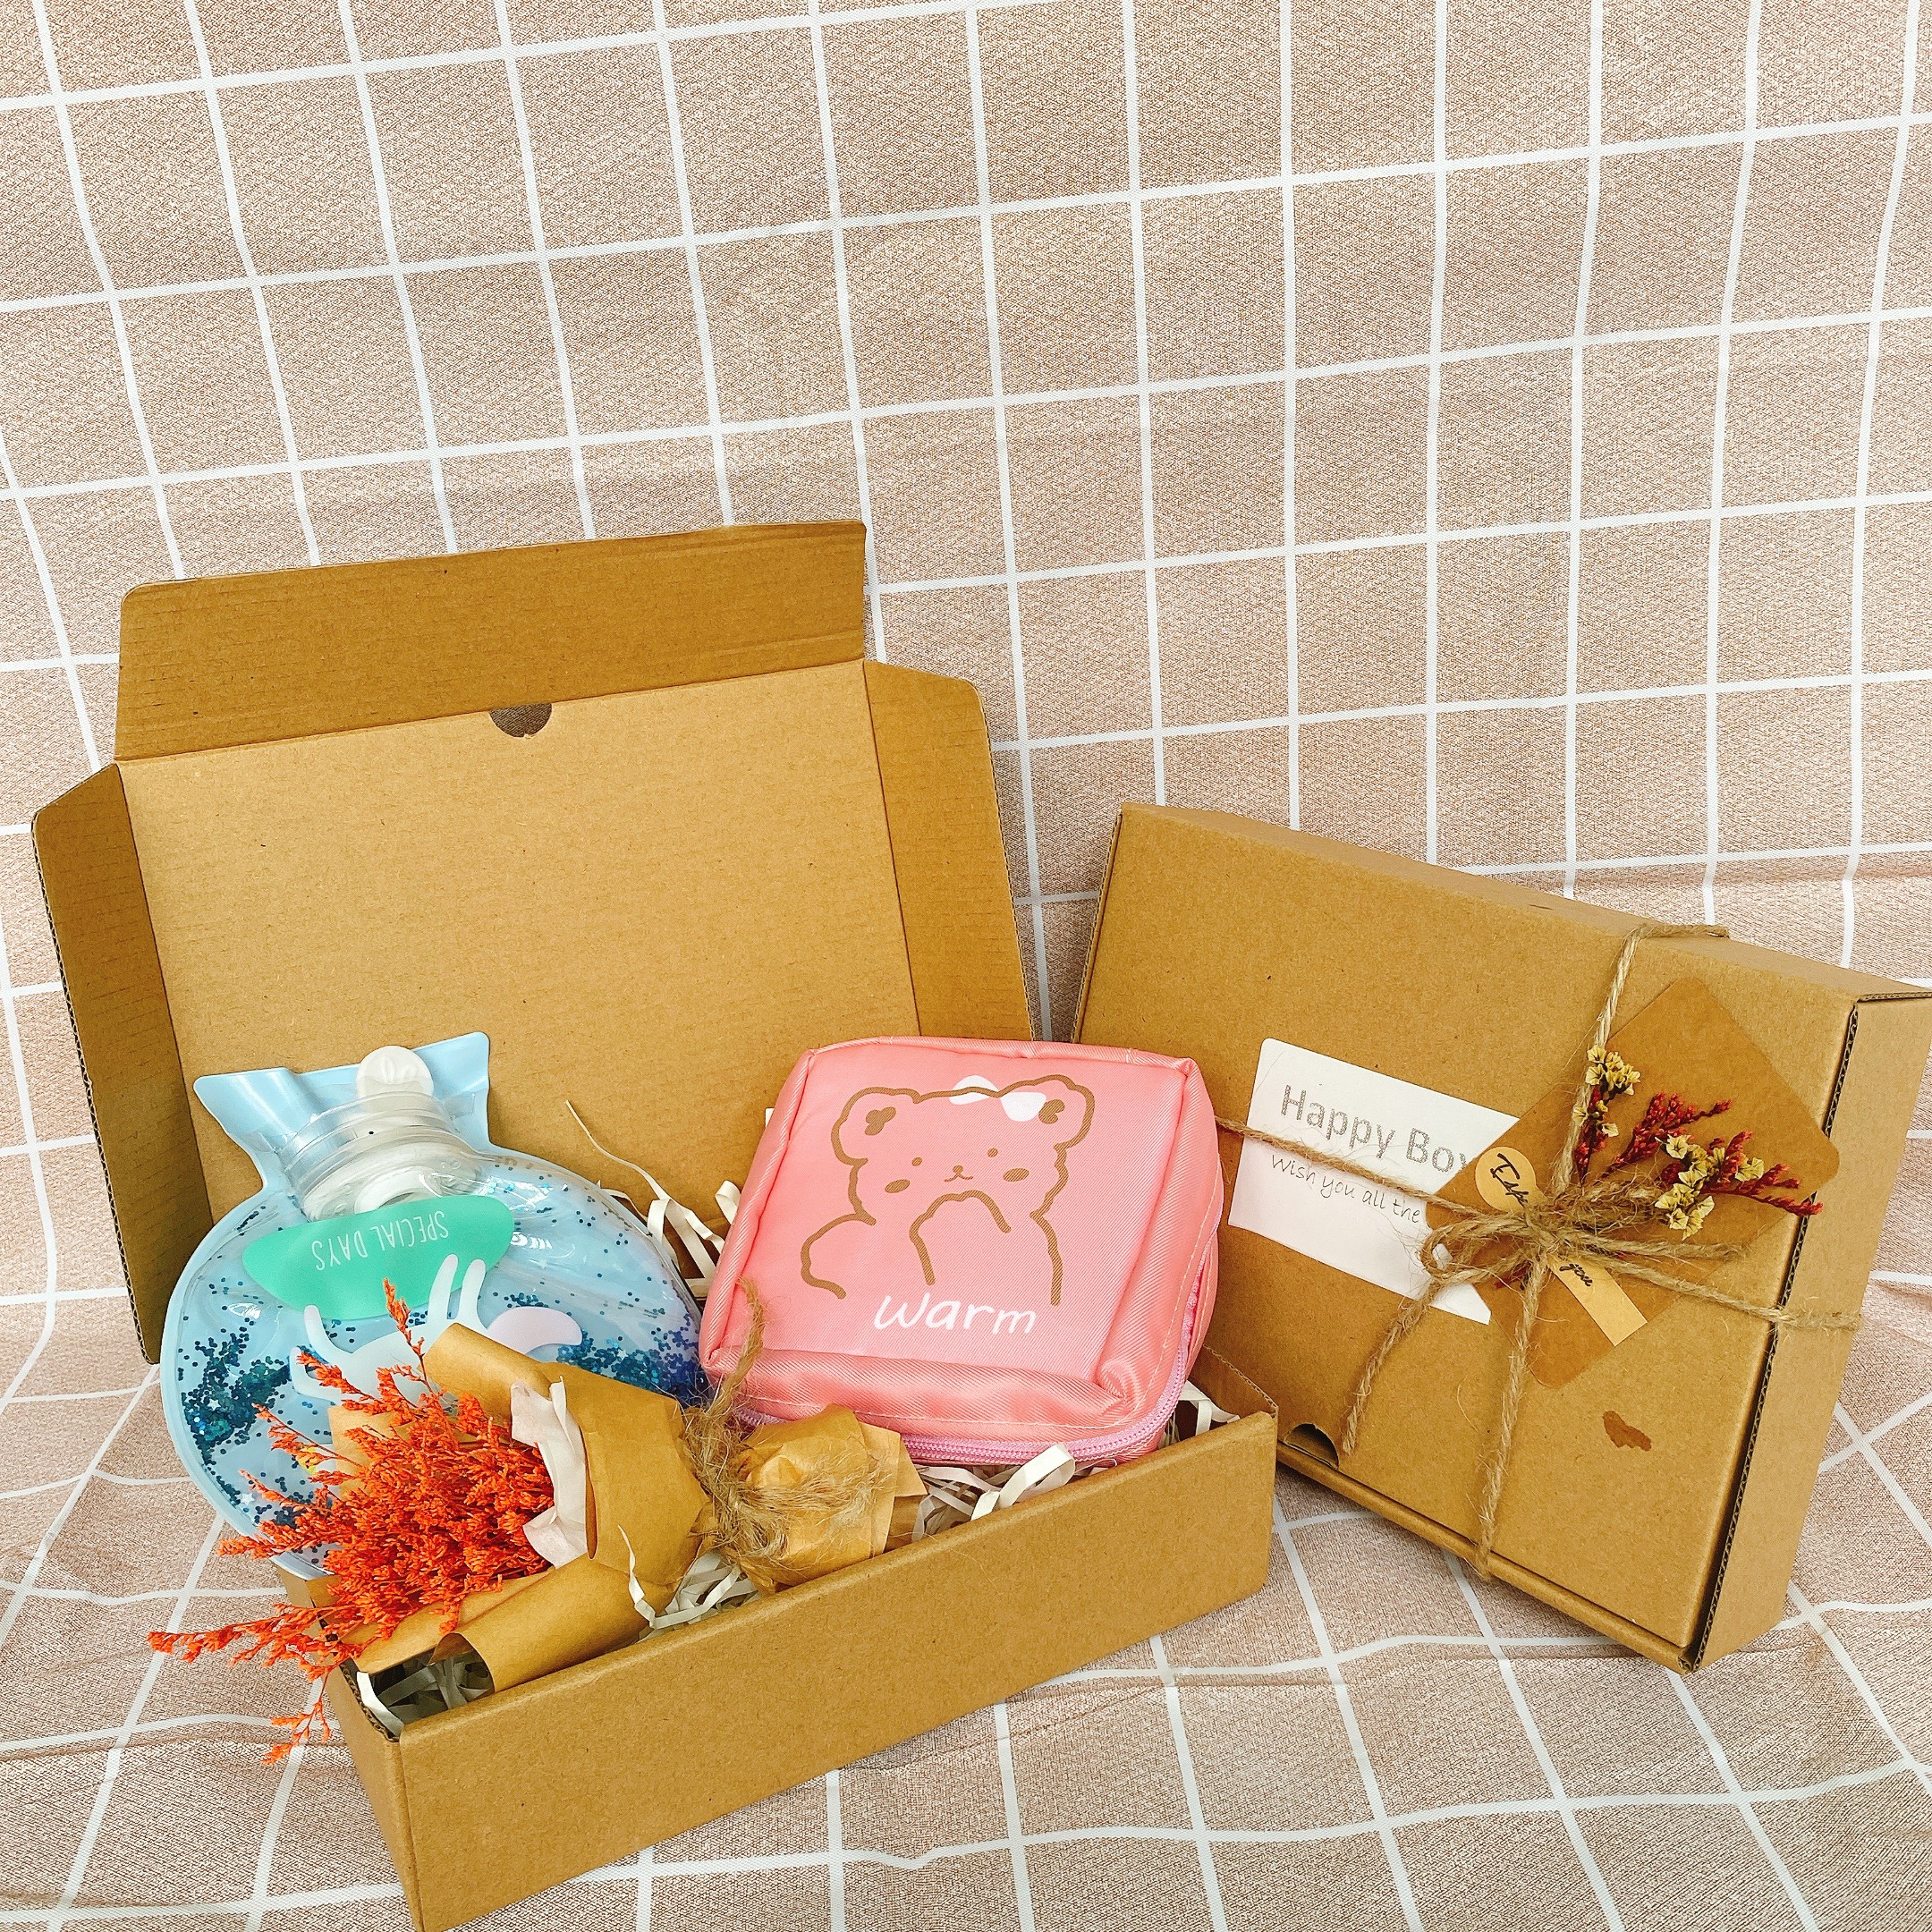 Set quà tặng HAPPY BOX tặng bạn trai, bạn gái xinh xắn tặng kèm thiệp và hỗ trợ viết thiệp xinh xắn và gói quà miễn phí